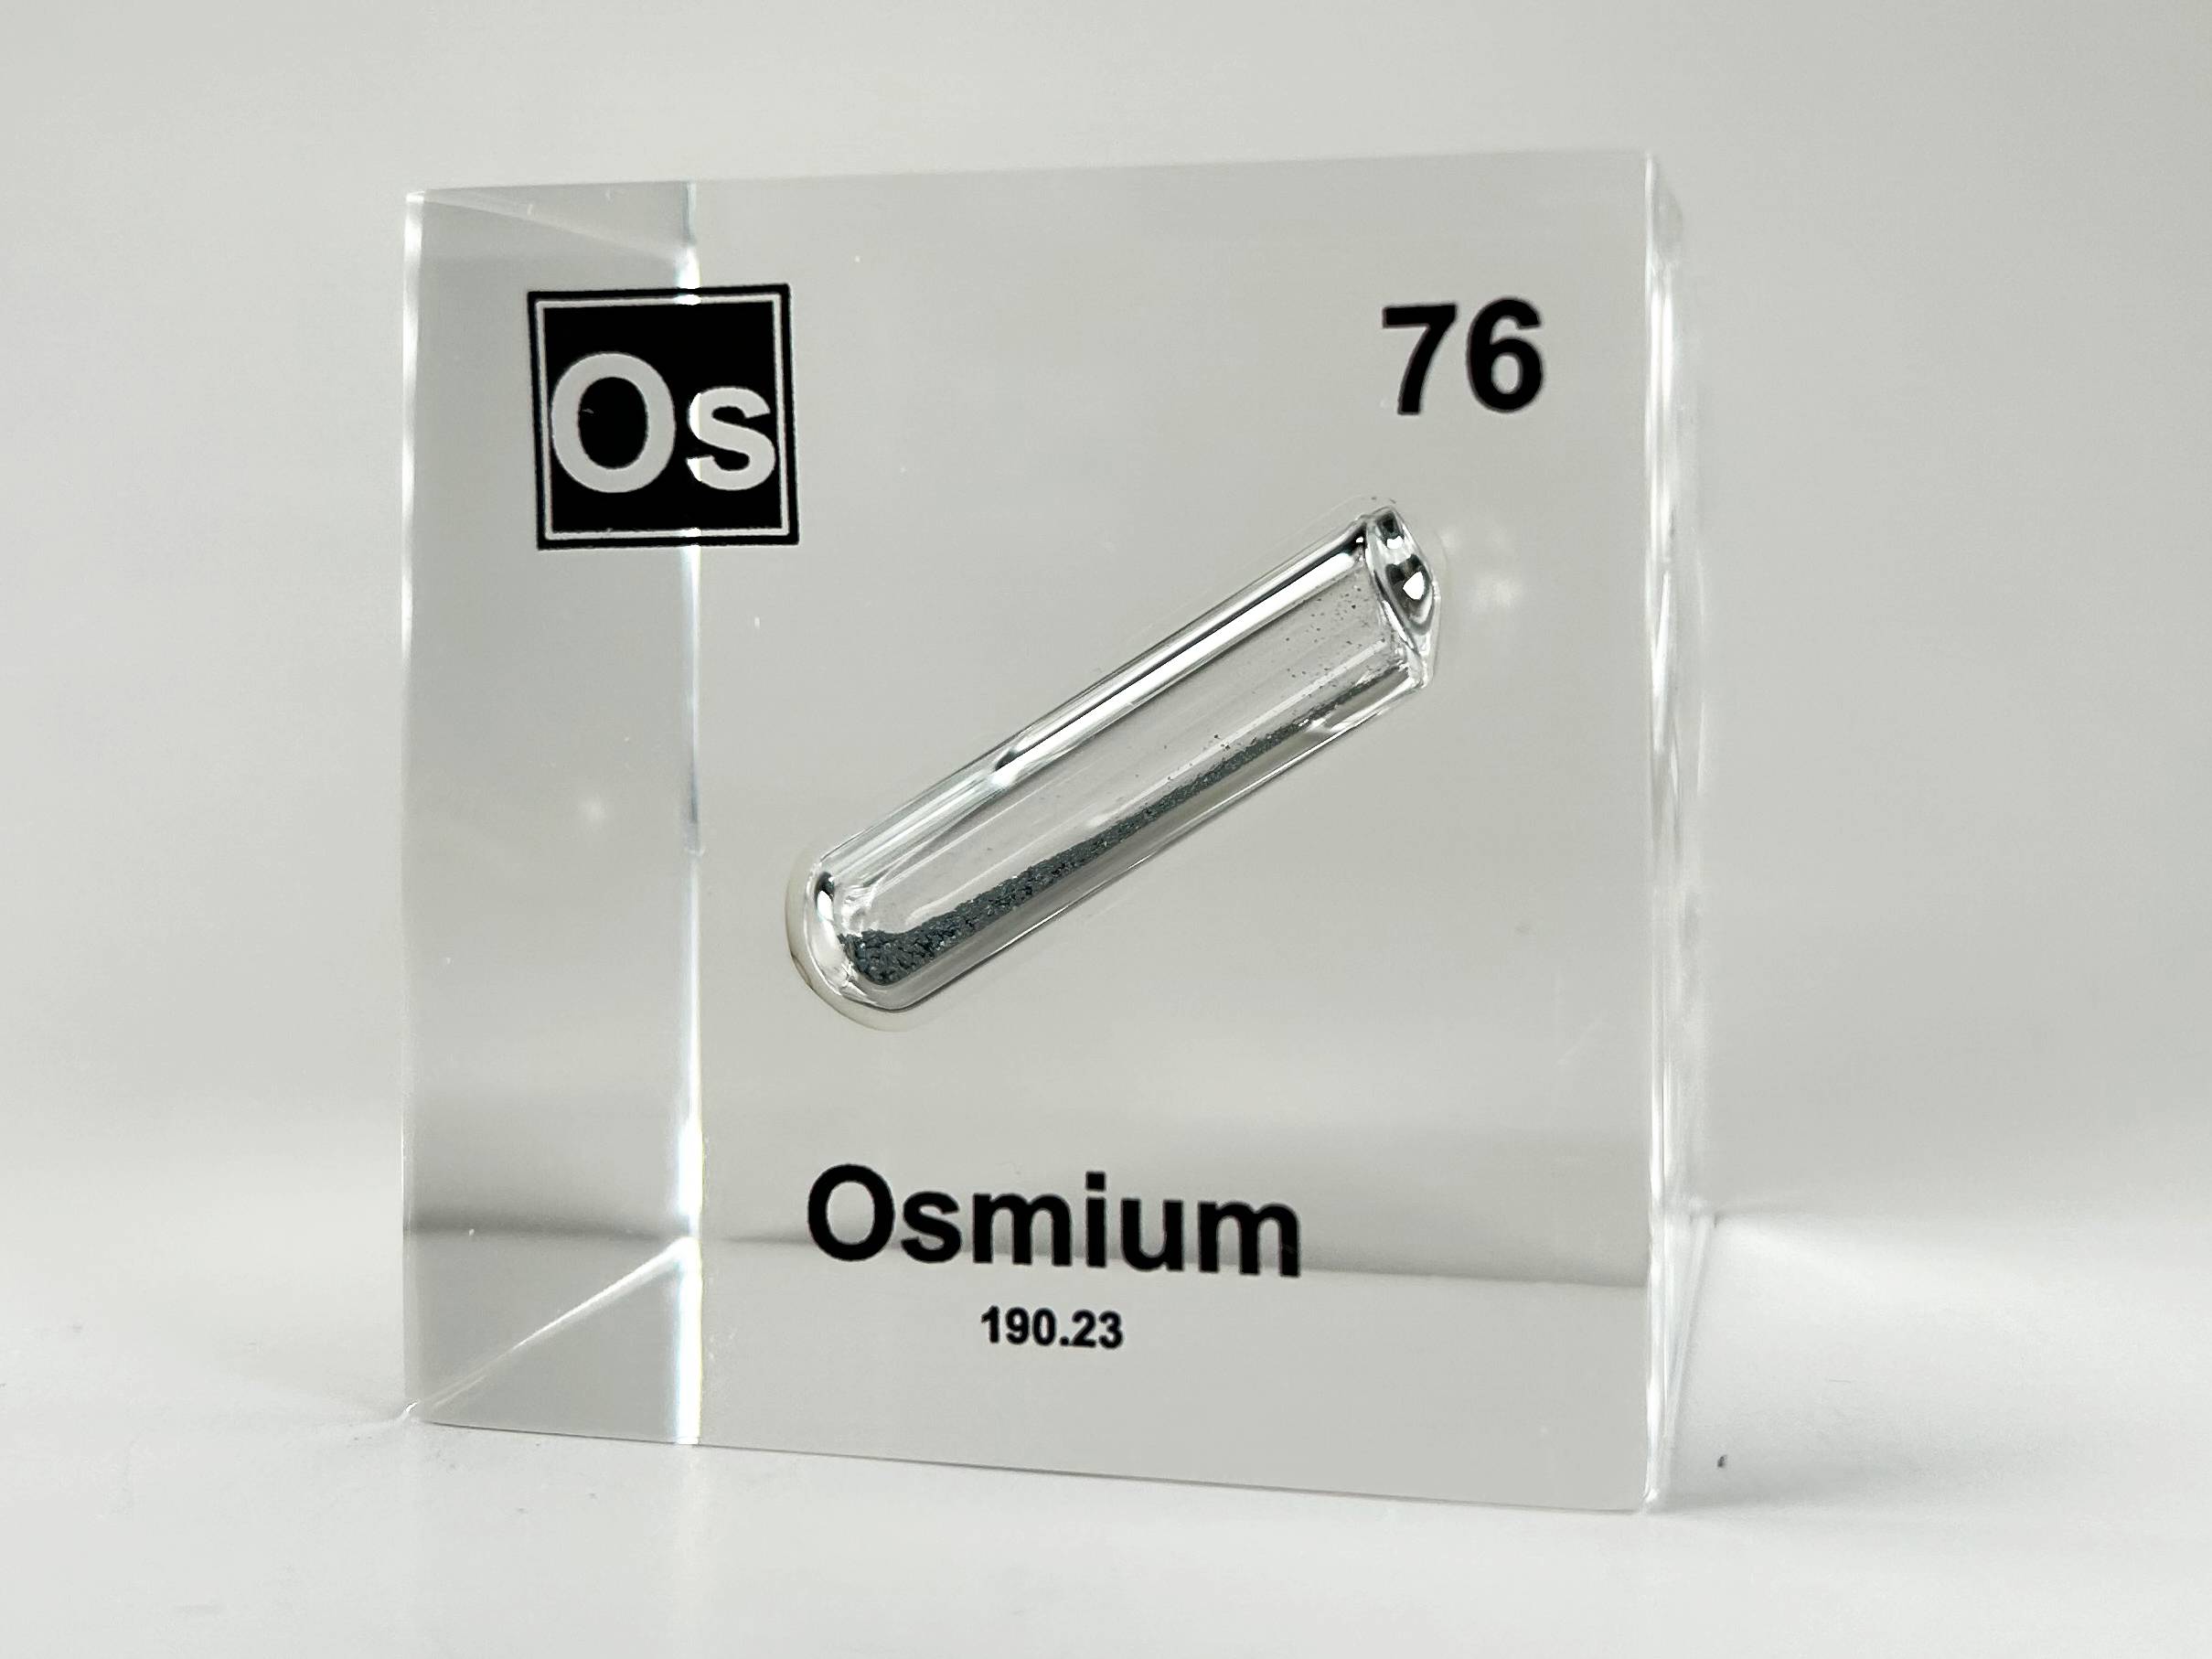 osmium element symbol